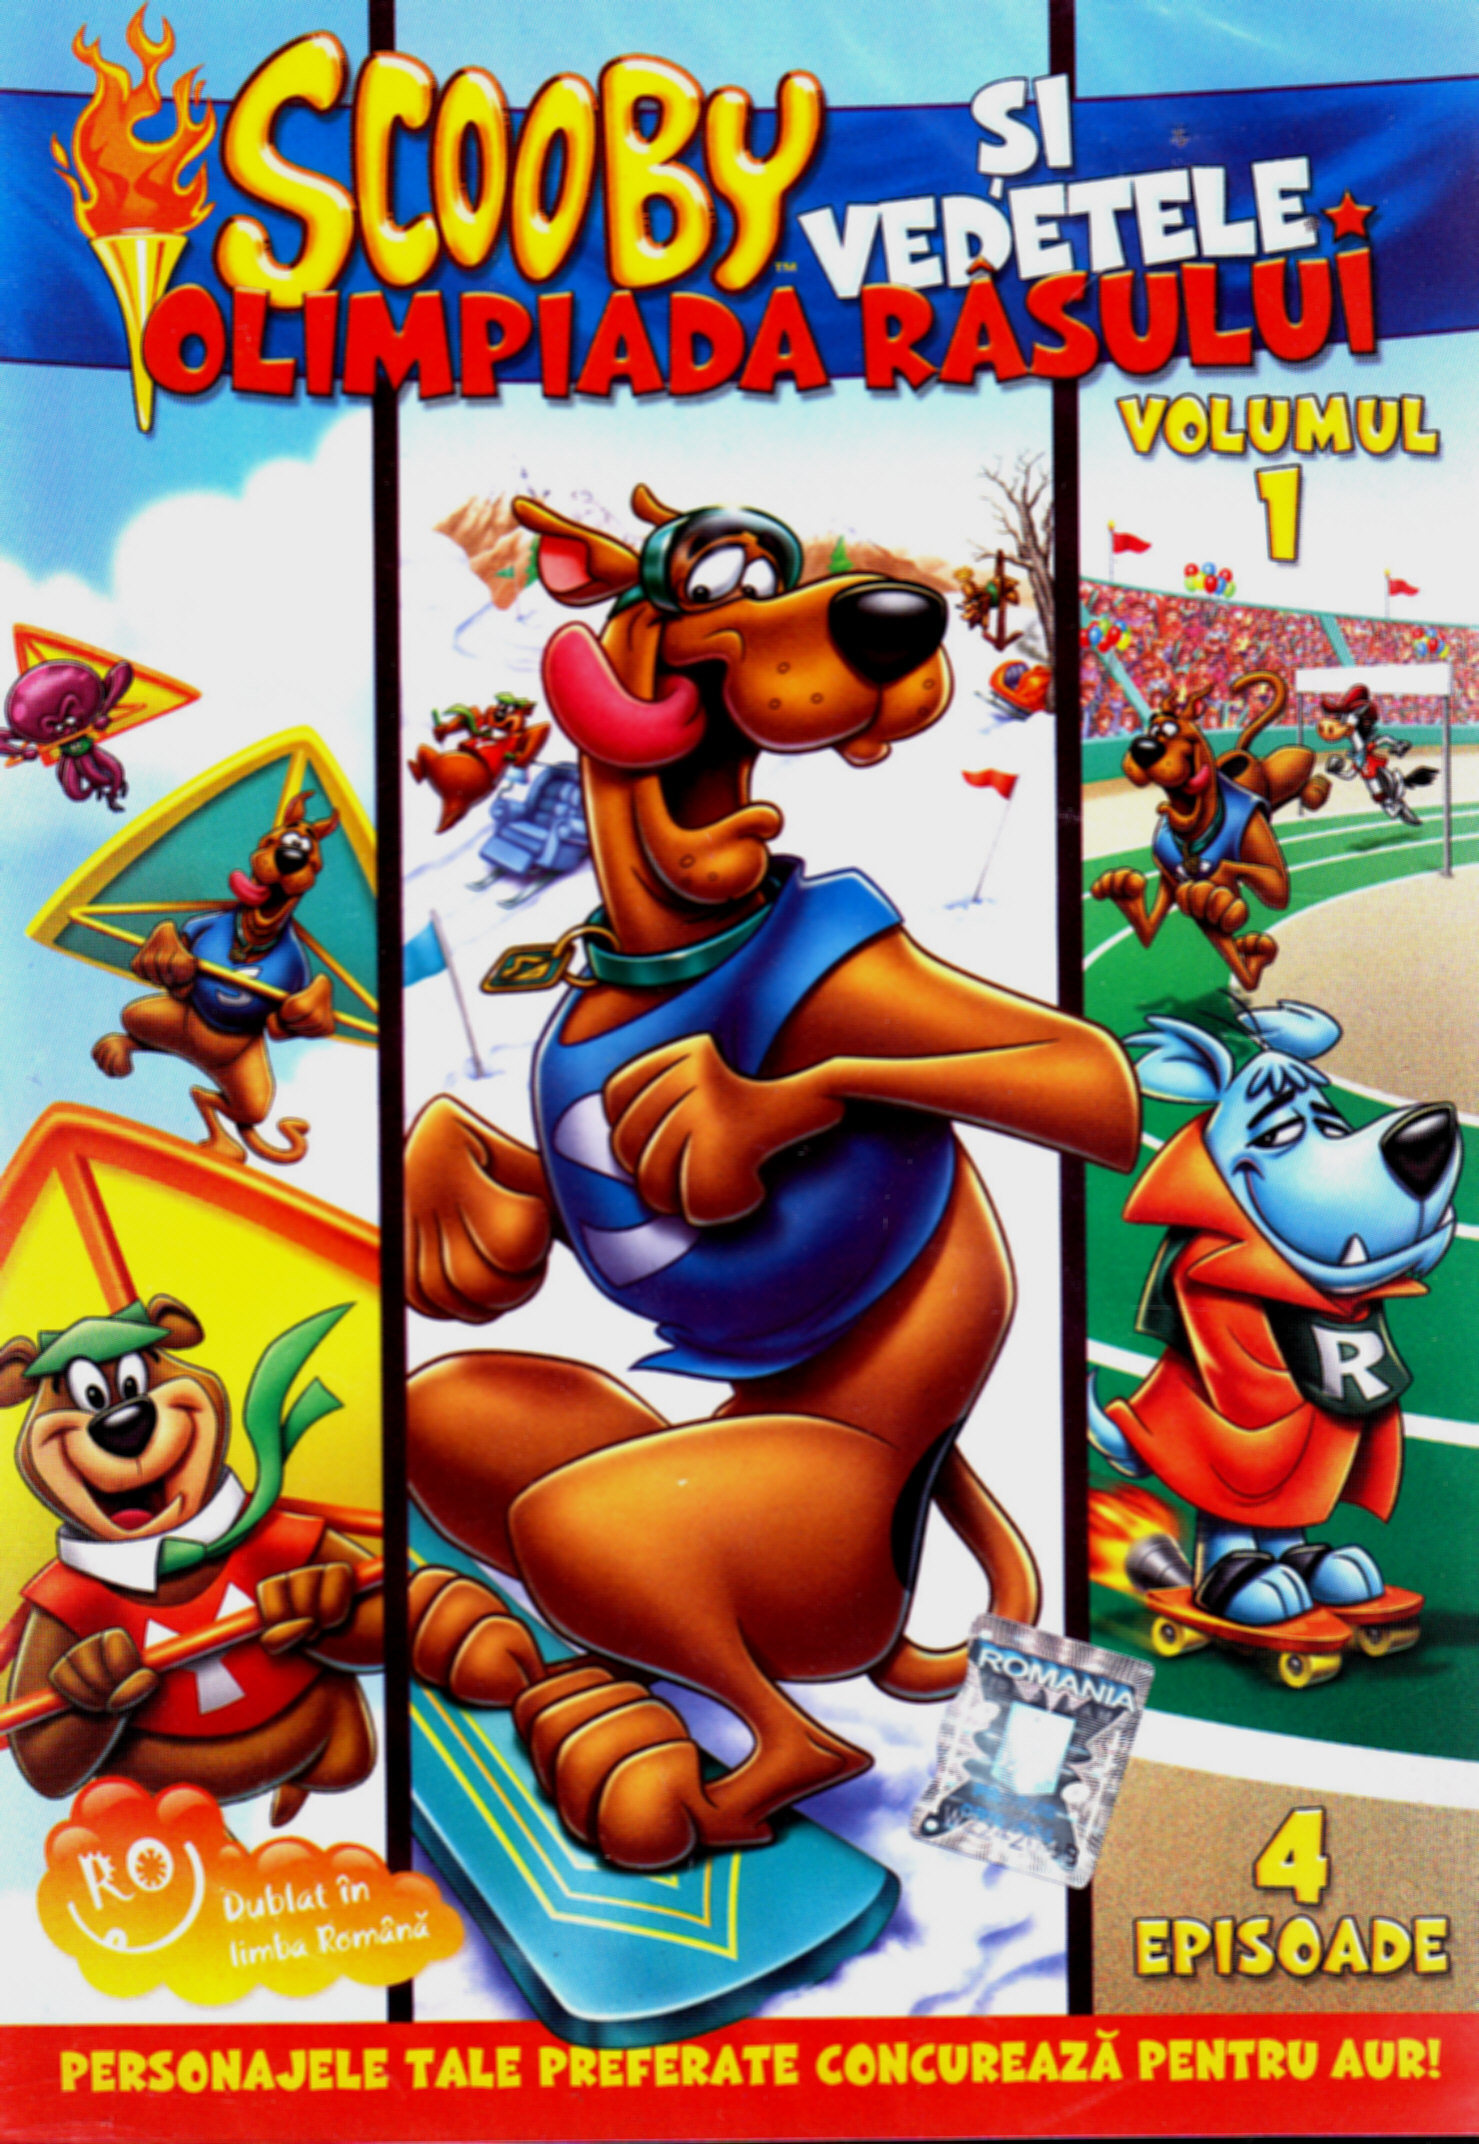 Dvd Scooby-Doo Si Vedetele - Olimpiada Rasului Volumul 1